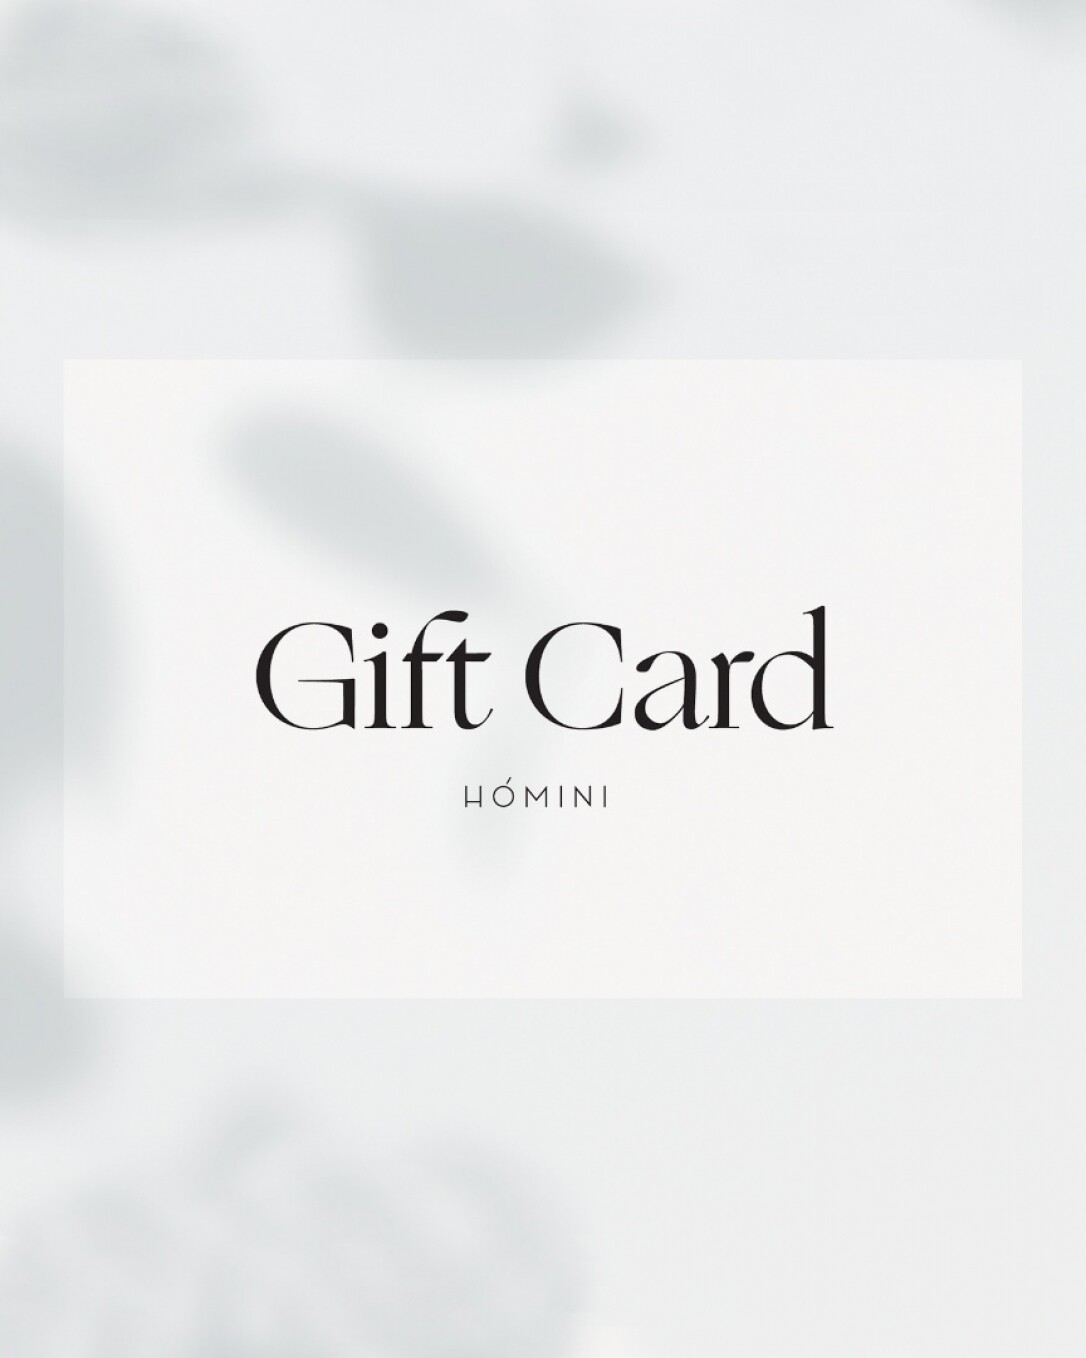 gift card, de papel texturado mate, homini studio